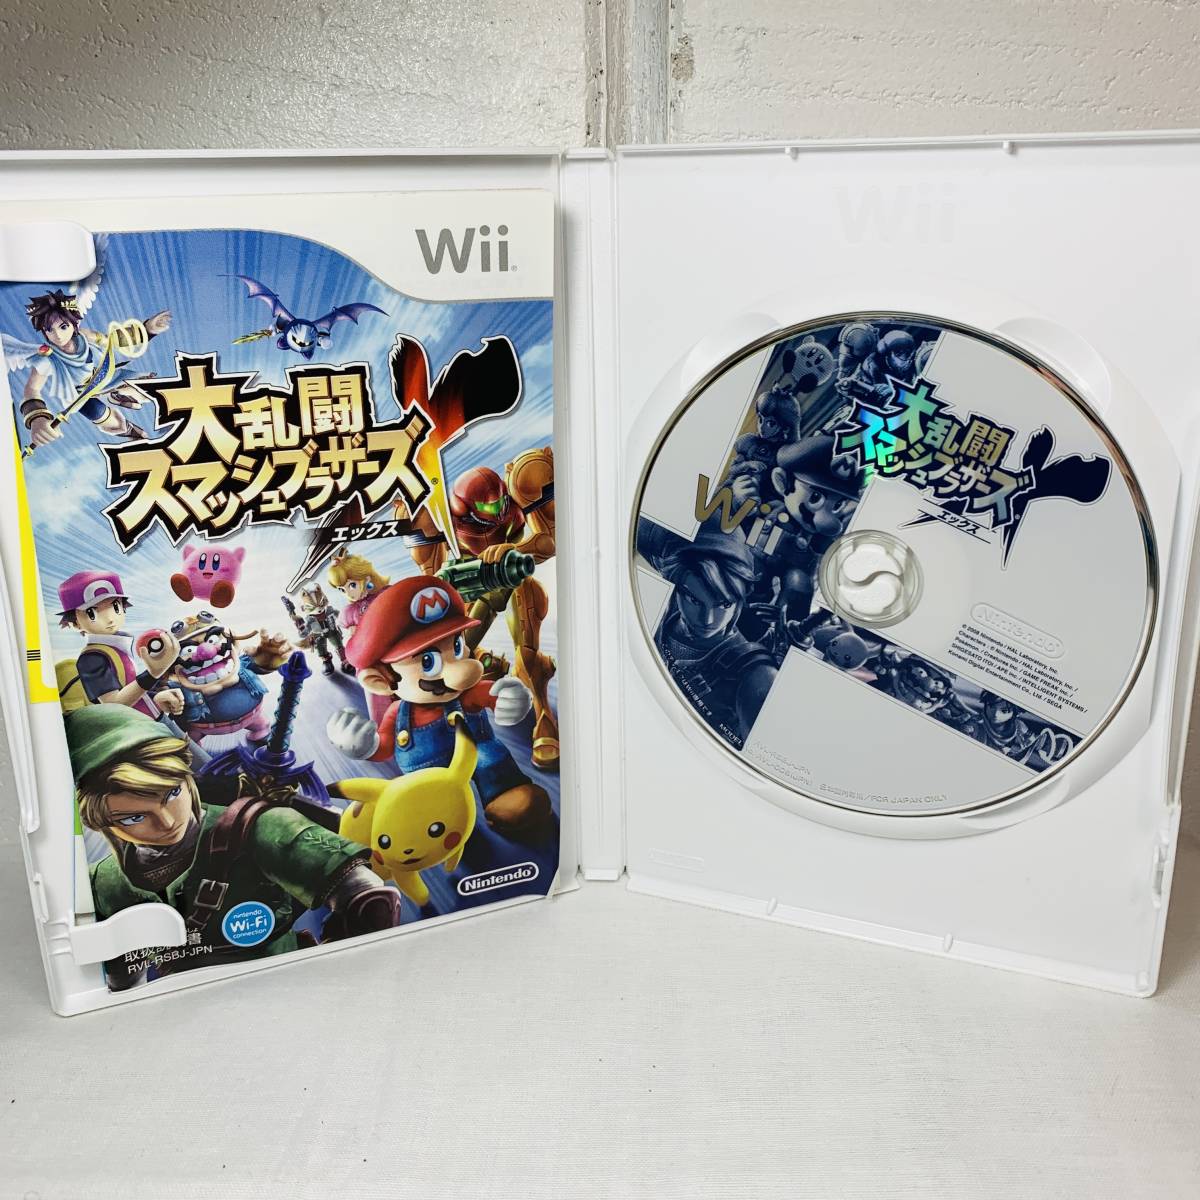 Wii ソフト 大乱闘スマッシュブラザーズ エックス ゲームソフト USED品 1円スタート_画像3